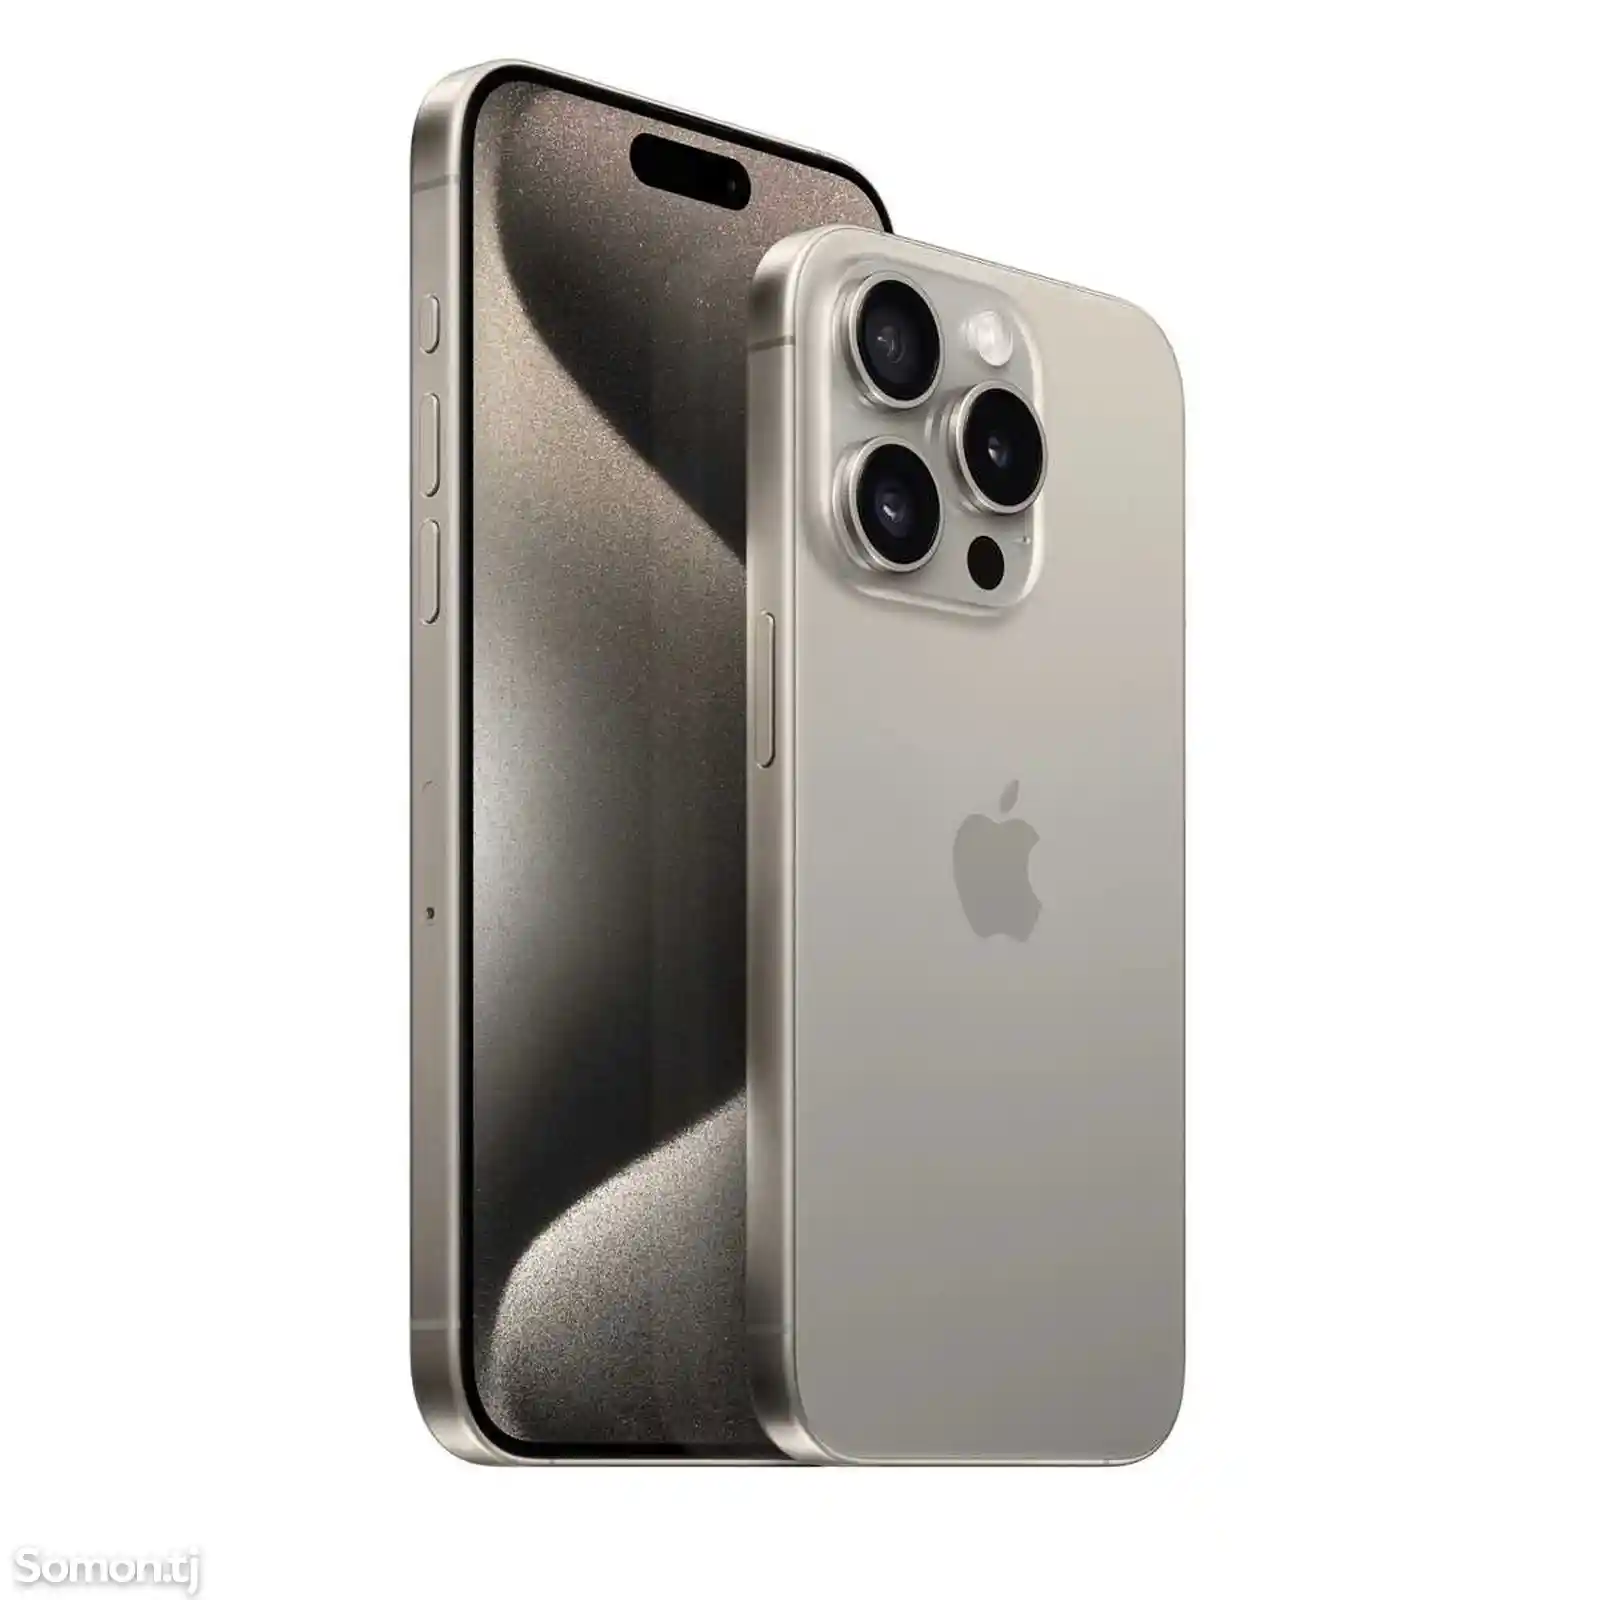 Apple iPhone 15 Pro Max, 256 gb, Natural Titanium-1